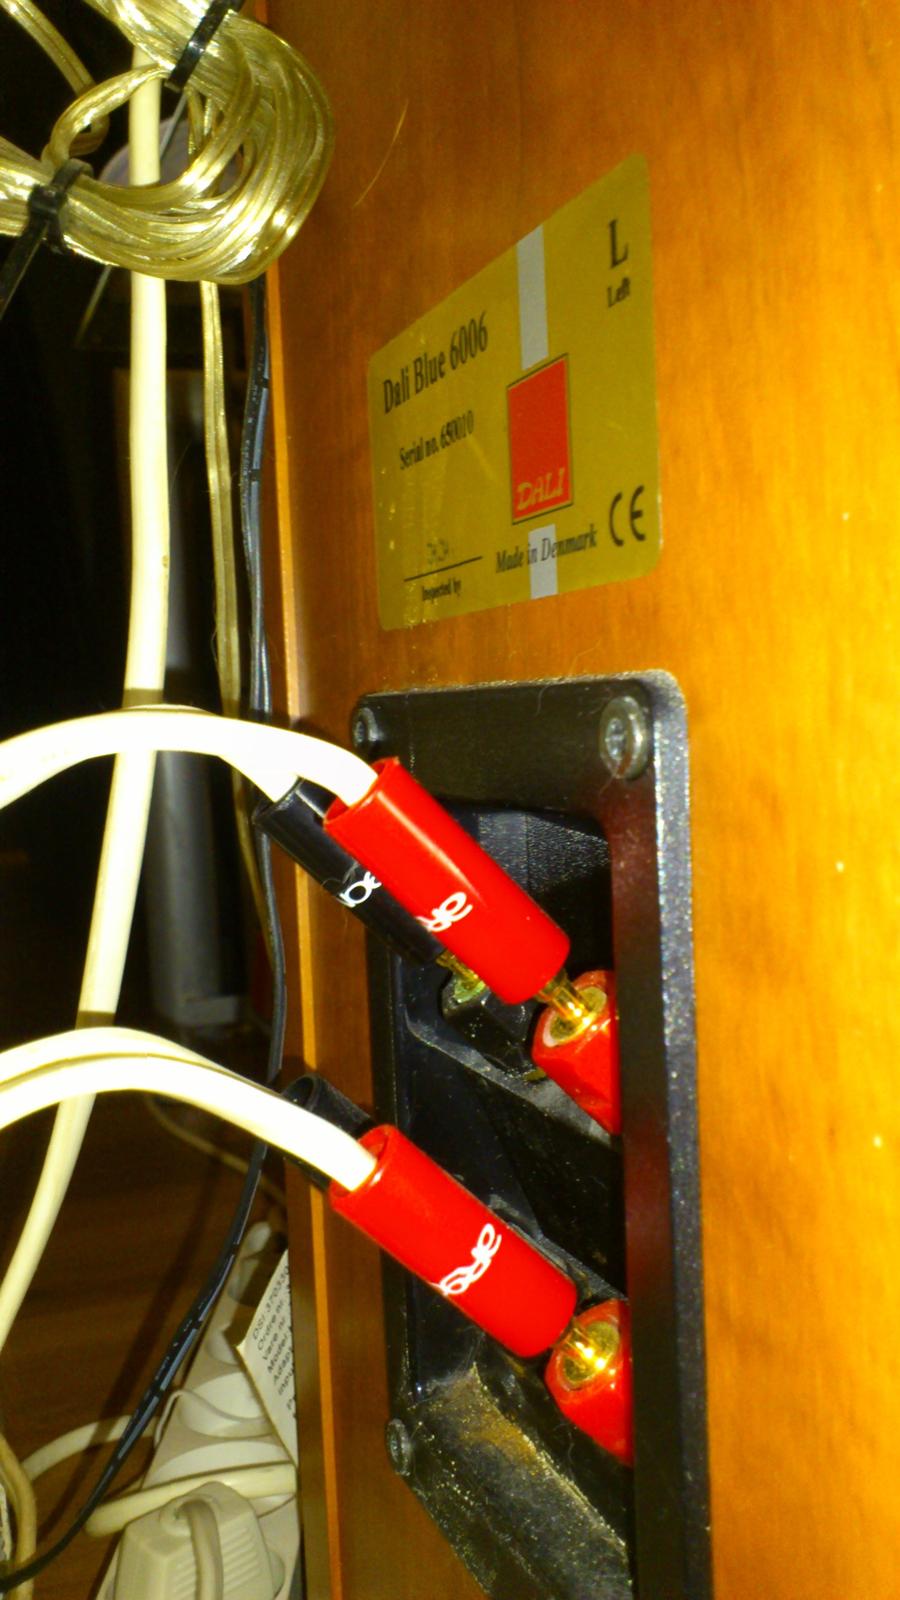 Hjemmebiograf 7.2 Dali & denon setup(gamle setup) - Side højtalerne Bi-wiret med VDH - snowline kabel.. billede 17